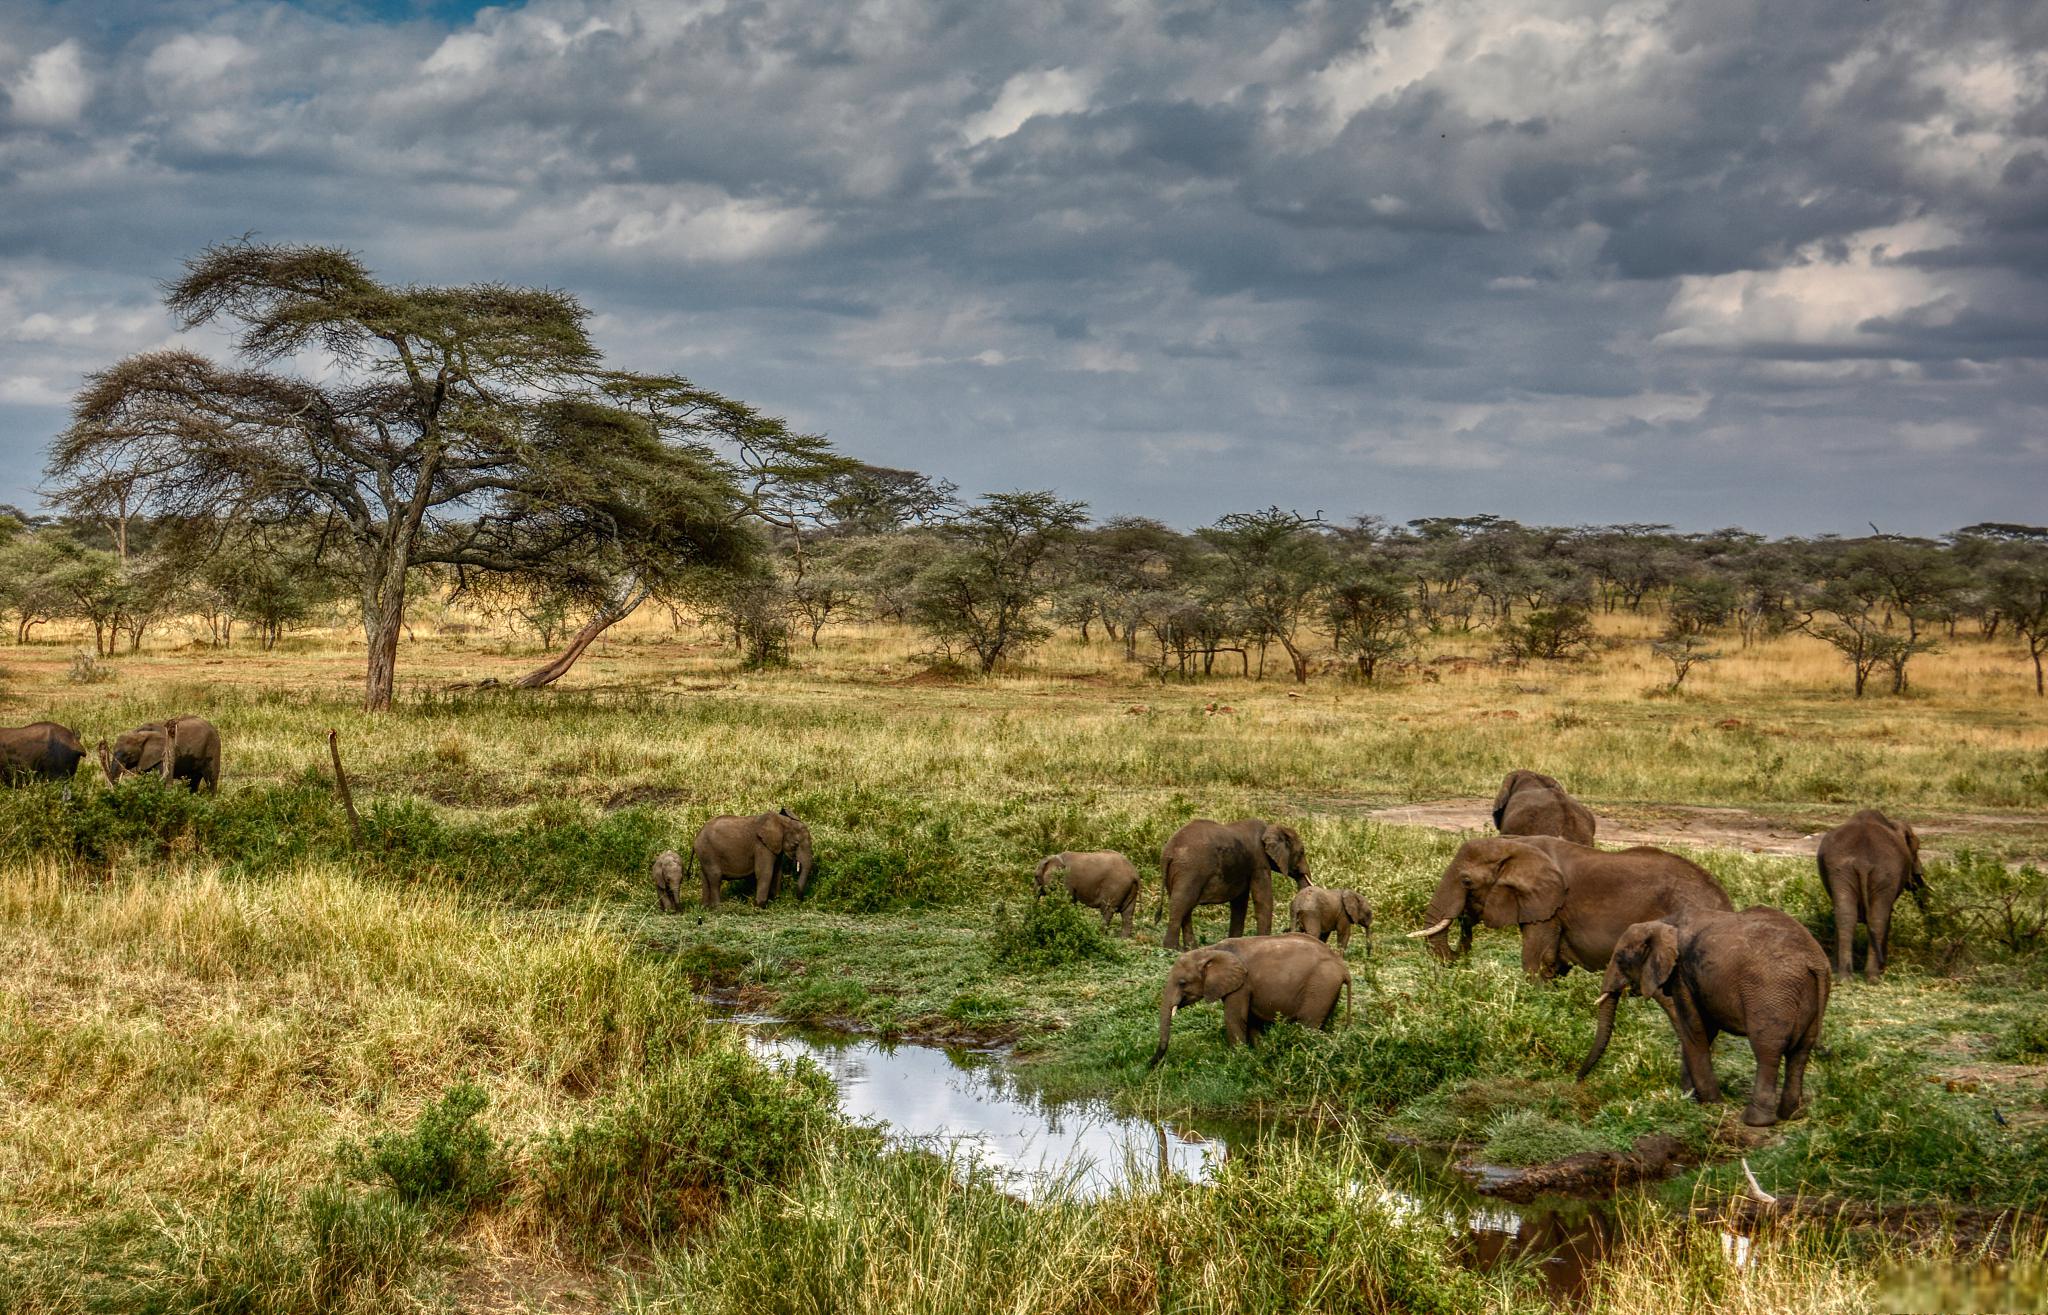 肯尼亚马赛马拉野生动物保护区@拙言旅游见解的动态